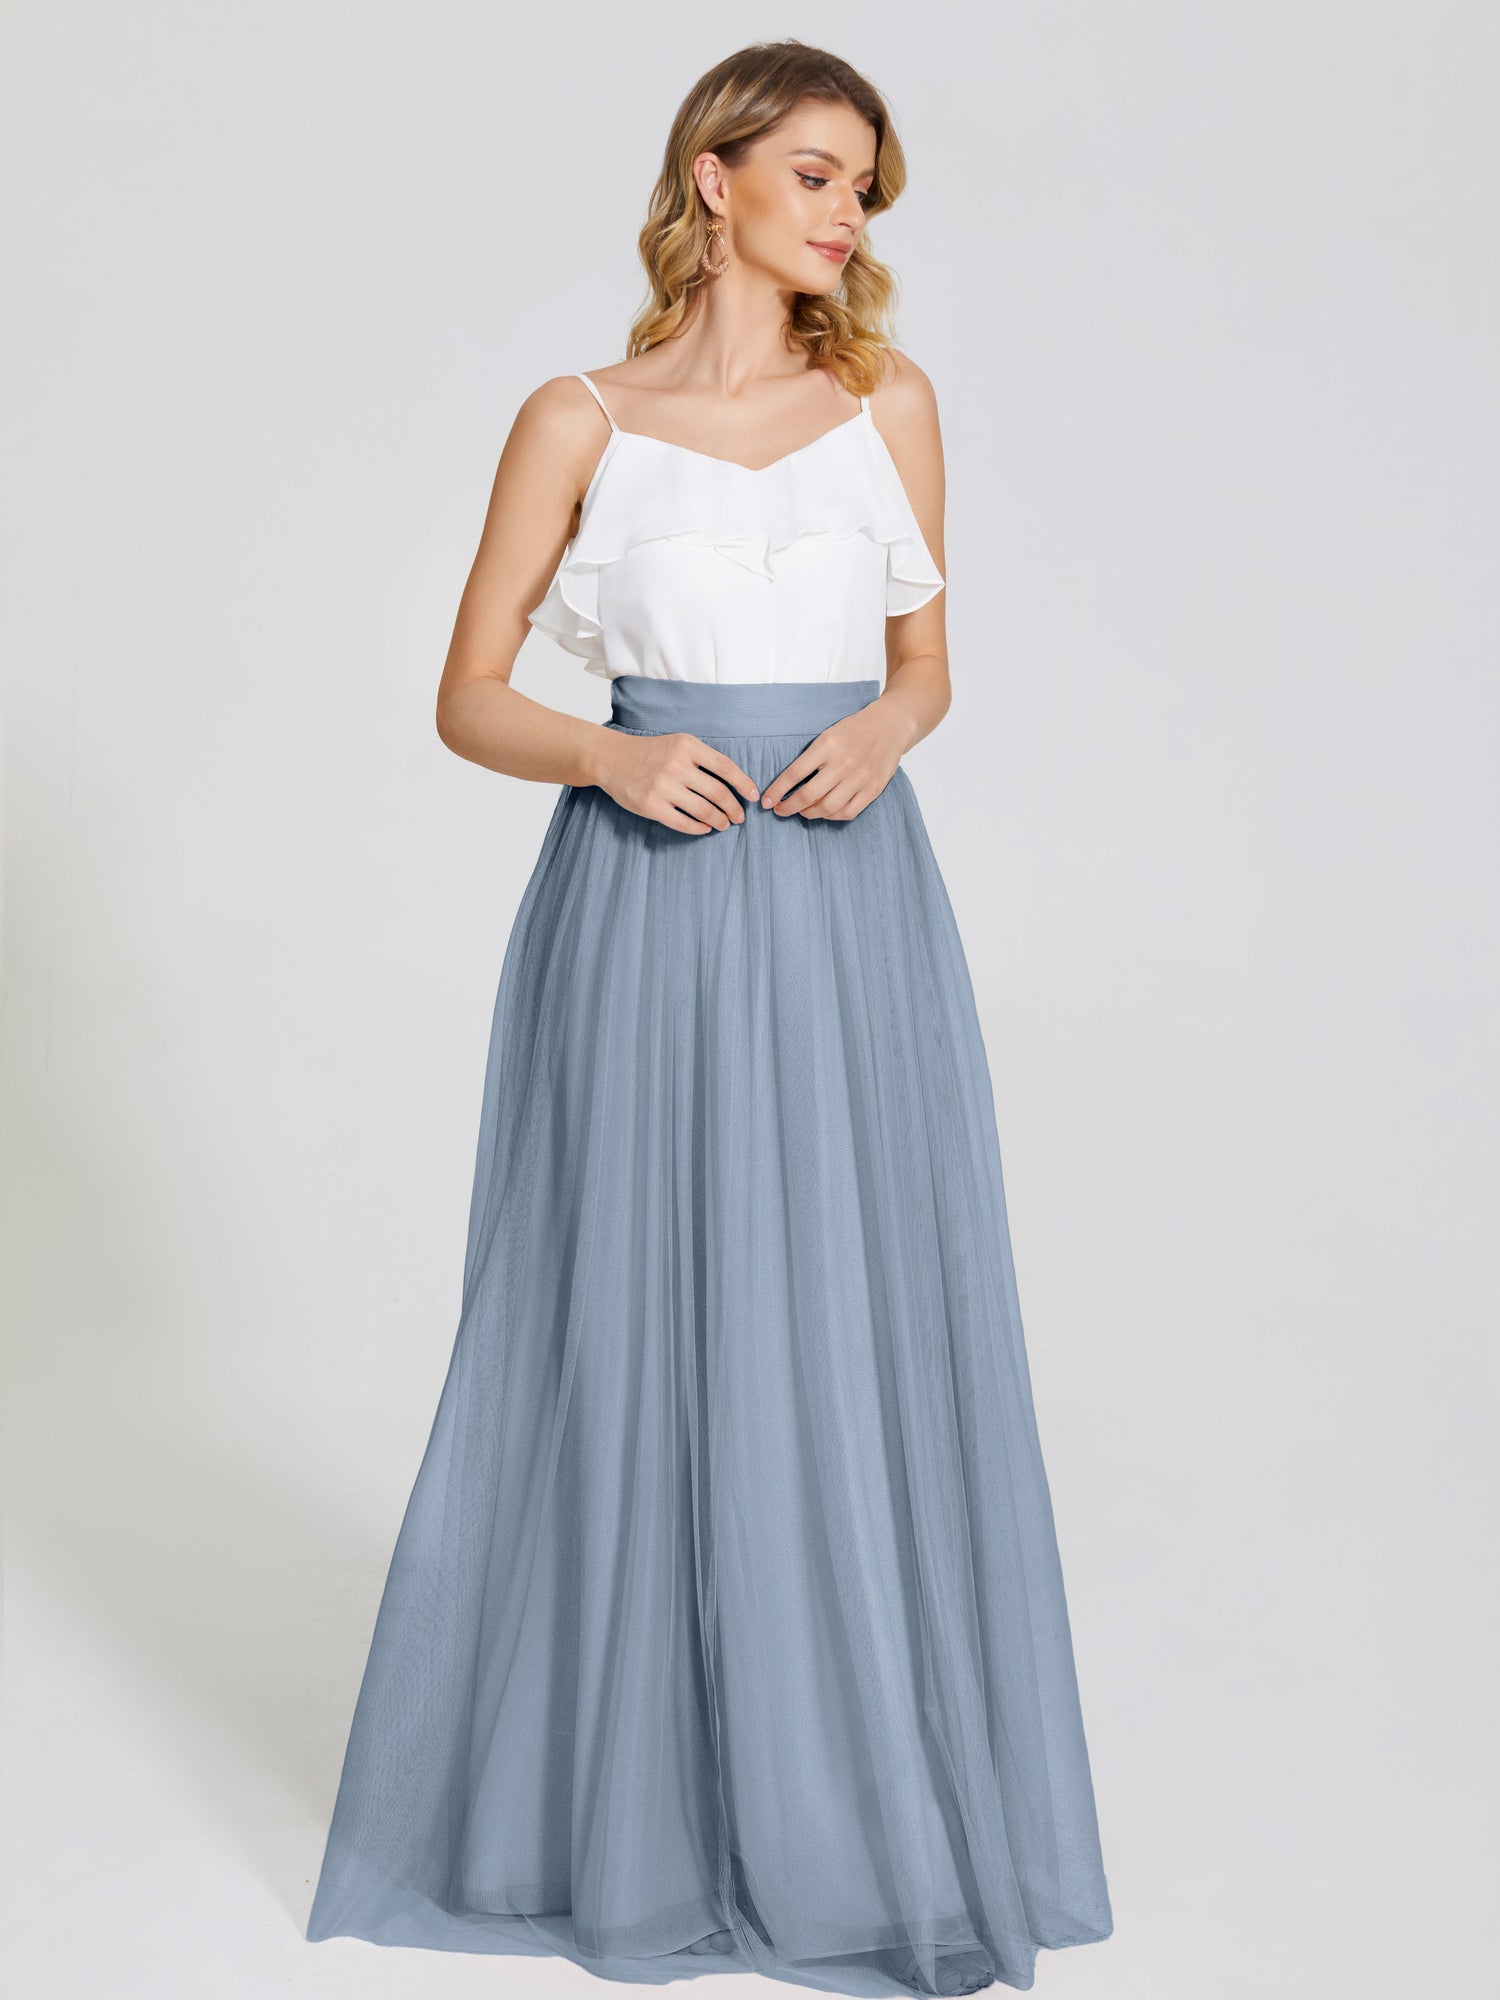 Champagne Bridal Skirt, Tulle Long Wedding Skirt, Silk Lined